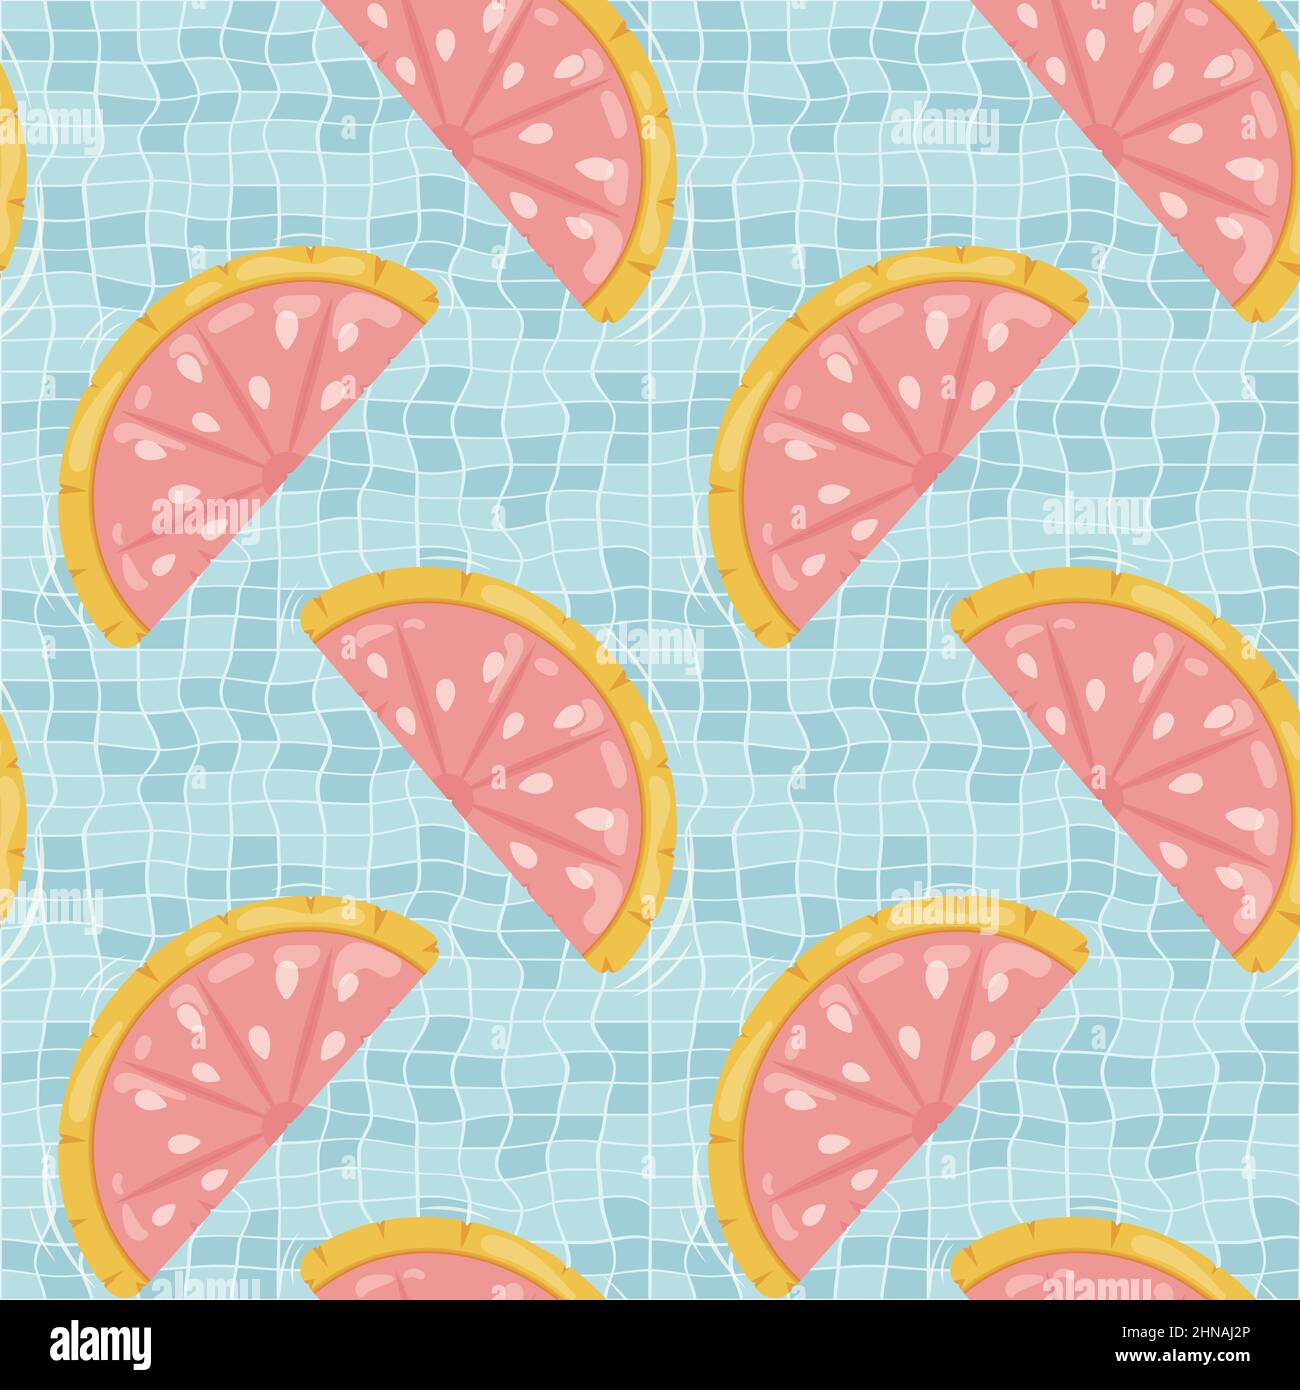 Nahtloses Muster mit aufblasbaren, grapefruitförmigen Matratzen für Poolparty, Stoffhintergrund und Banner Stock Vektor